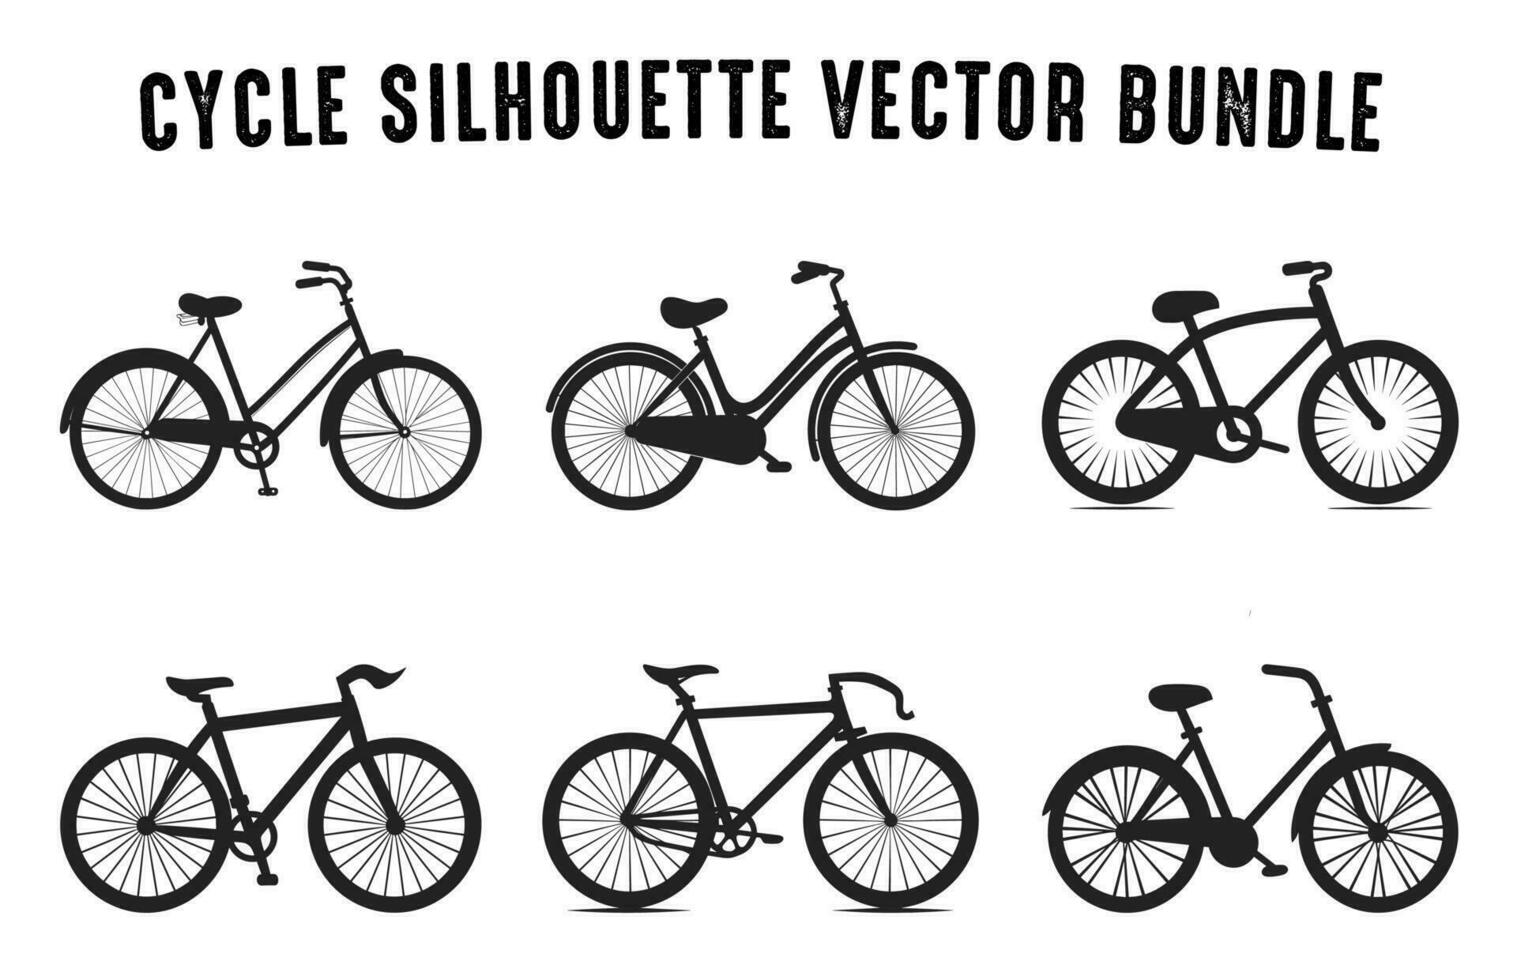 ensemble de vélo silhouettes vecteur illustration, divers type de cycle vecteur collection isolé sur une blanc Contexte